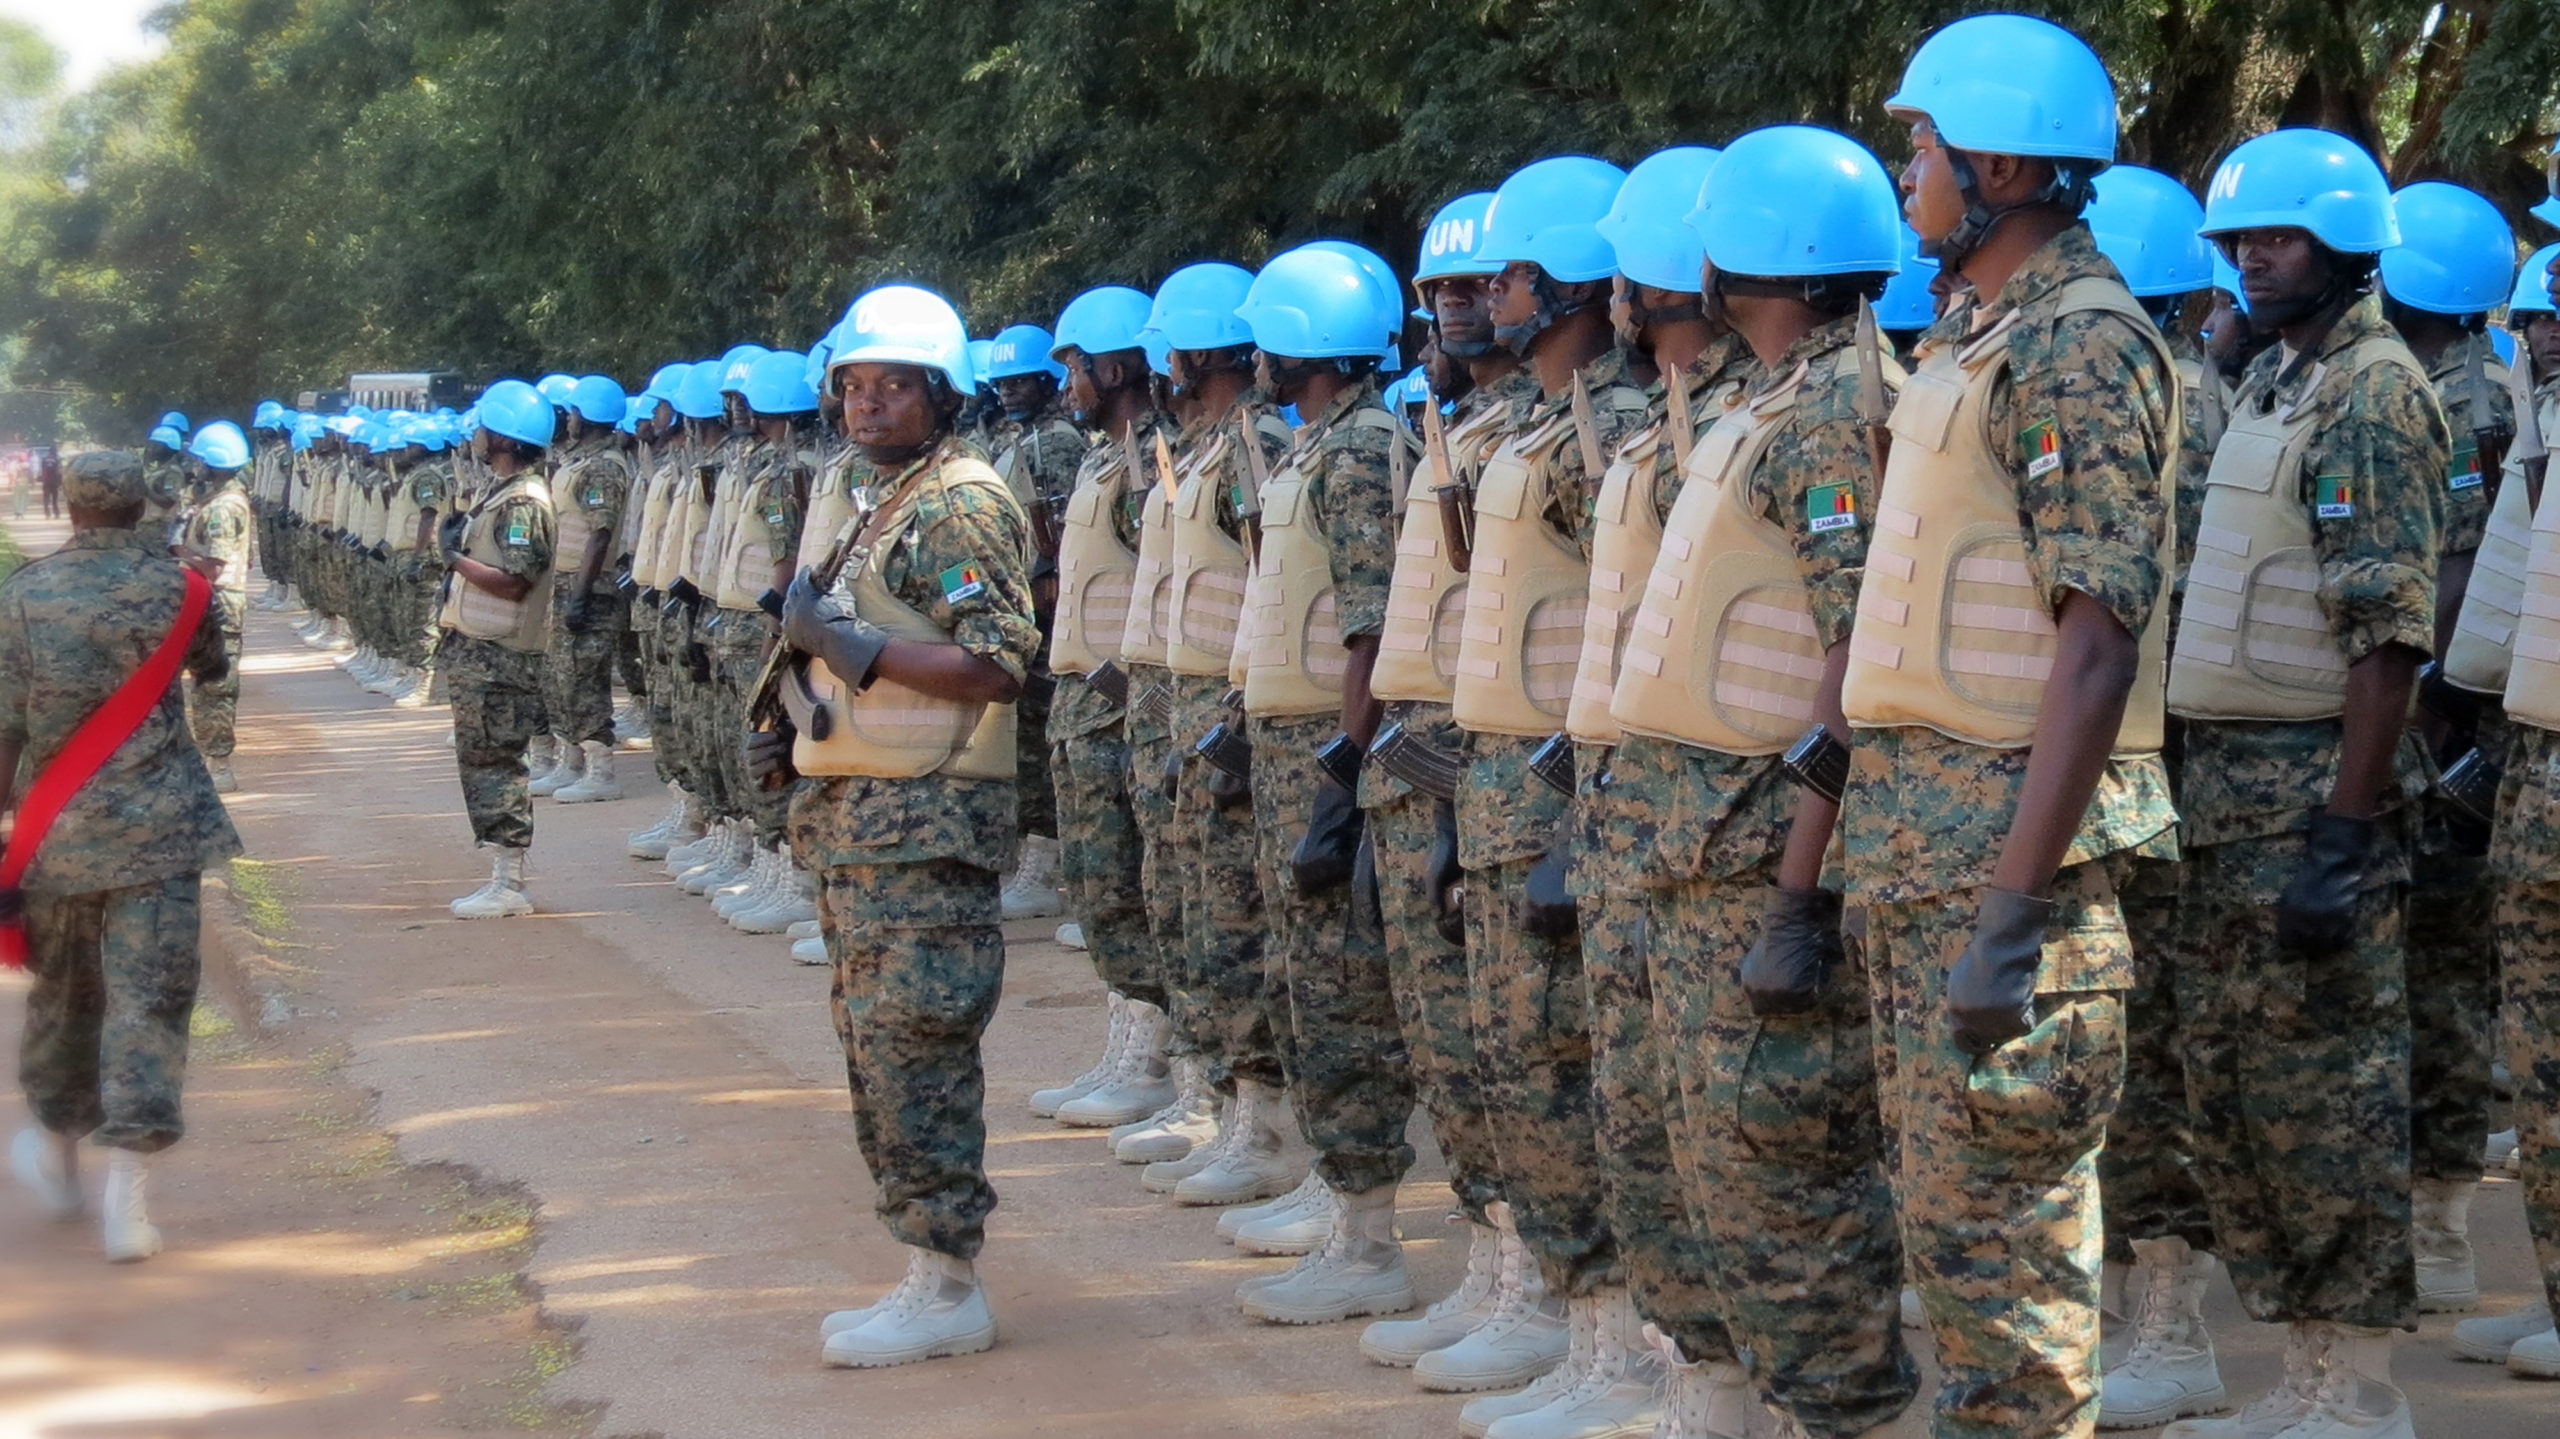 FN-soldater, ikledd blå hjelmer, står på rekke og rad for inspeksjon og prøving av nye uniformer.